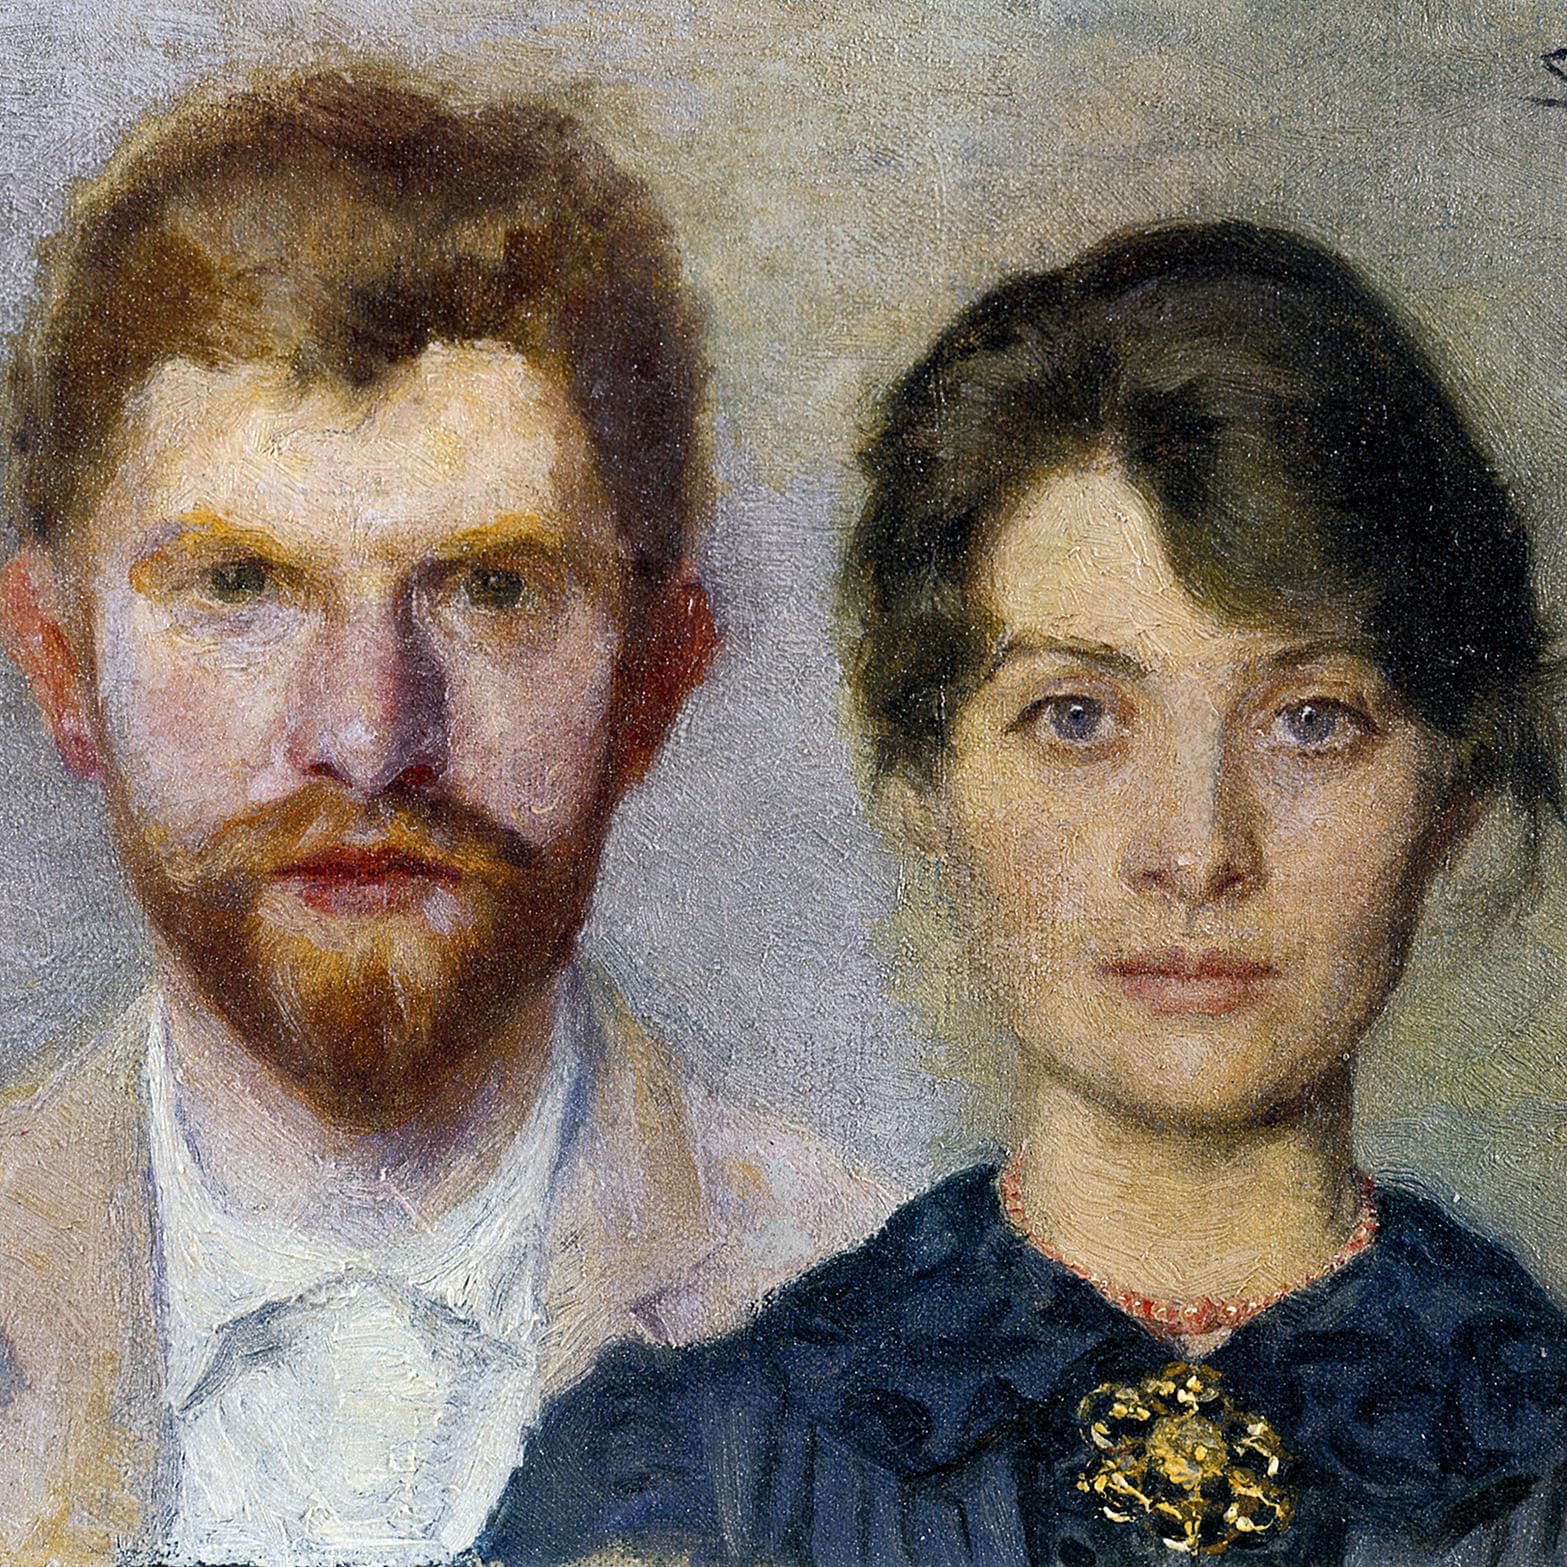 Dobbelt portræt af Marie og P. S. Krøyer, 1890